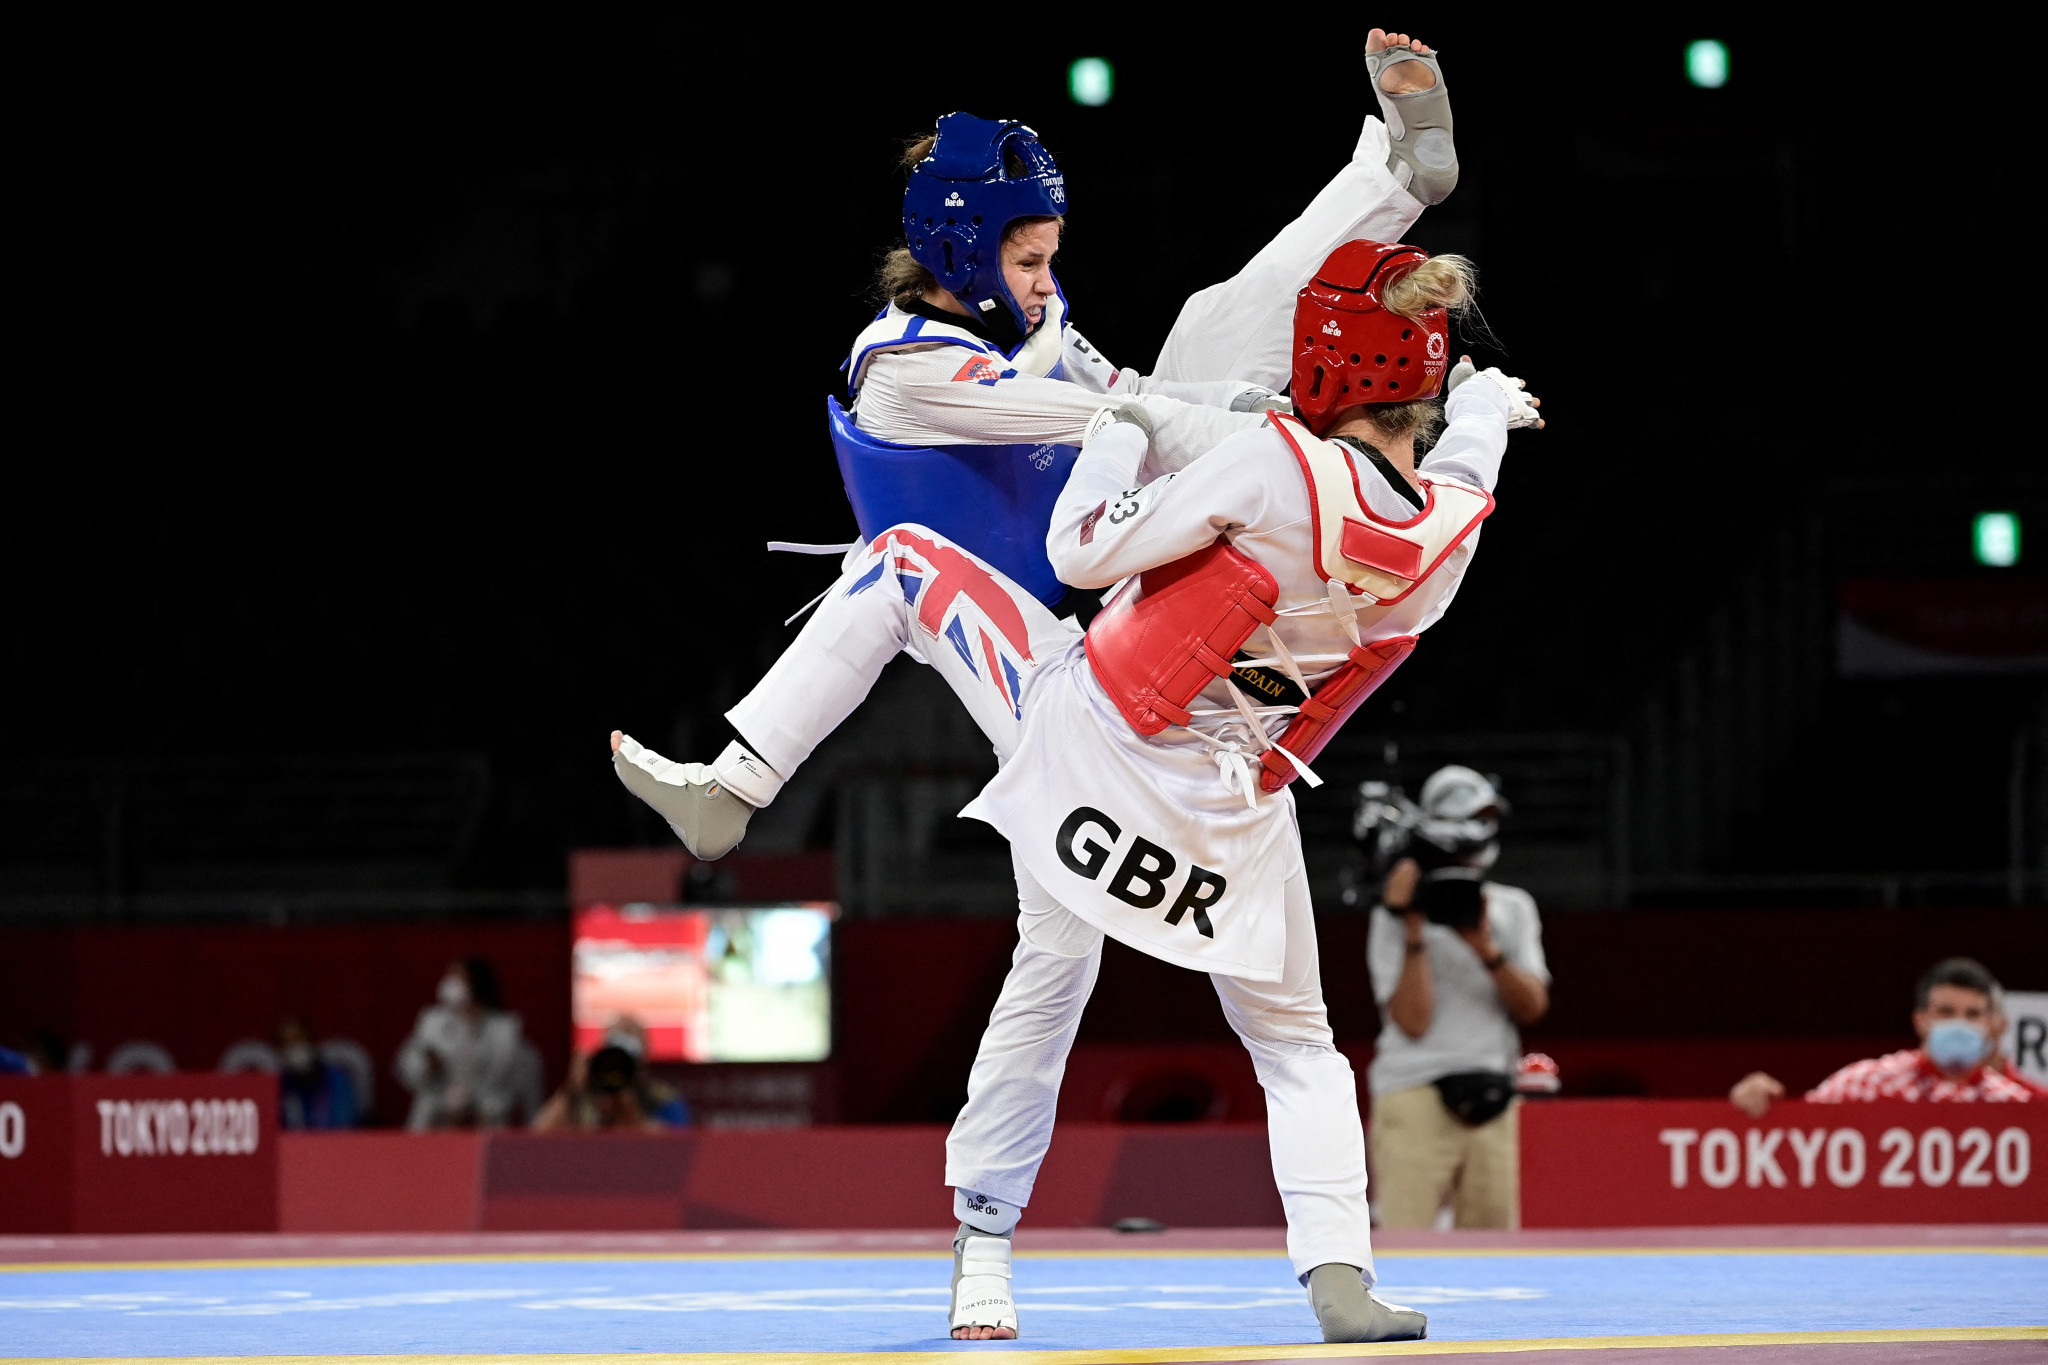 Daedo announced as official sponsor of GB Taekwondo 